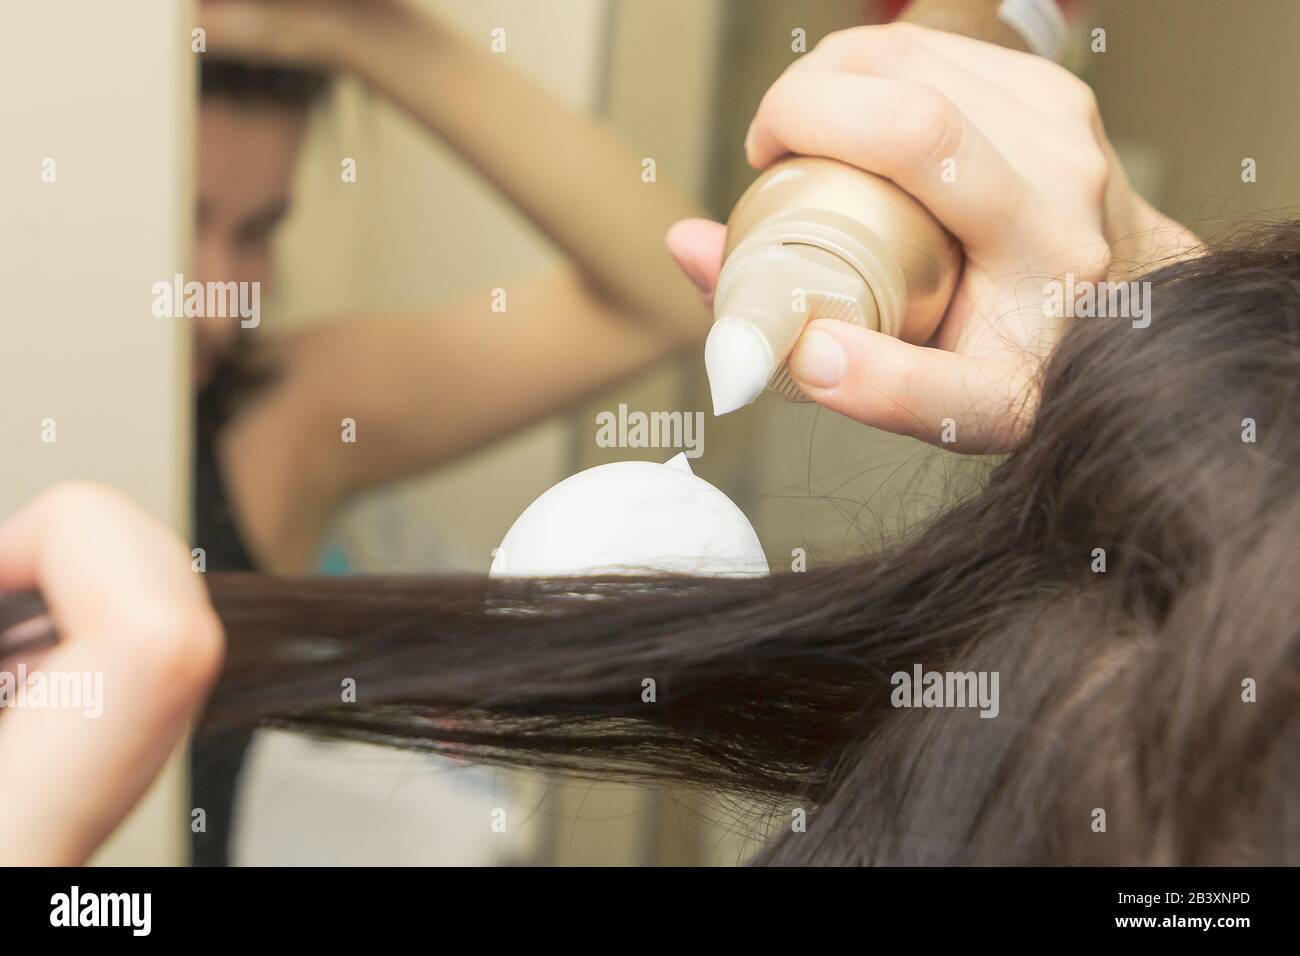 Les jeunes femmes coiffaient ses cheveux avec une mousse ou une mousse.  Mousse coiffante sur les cheveux longs et droits marron Photo Stock - Alamy